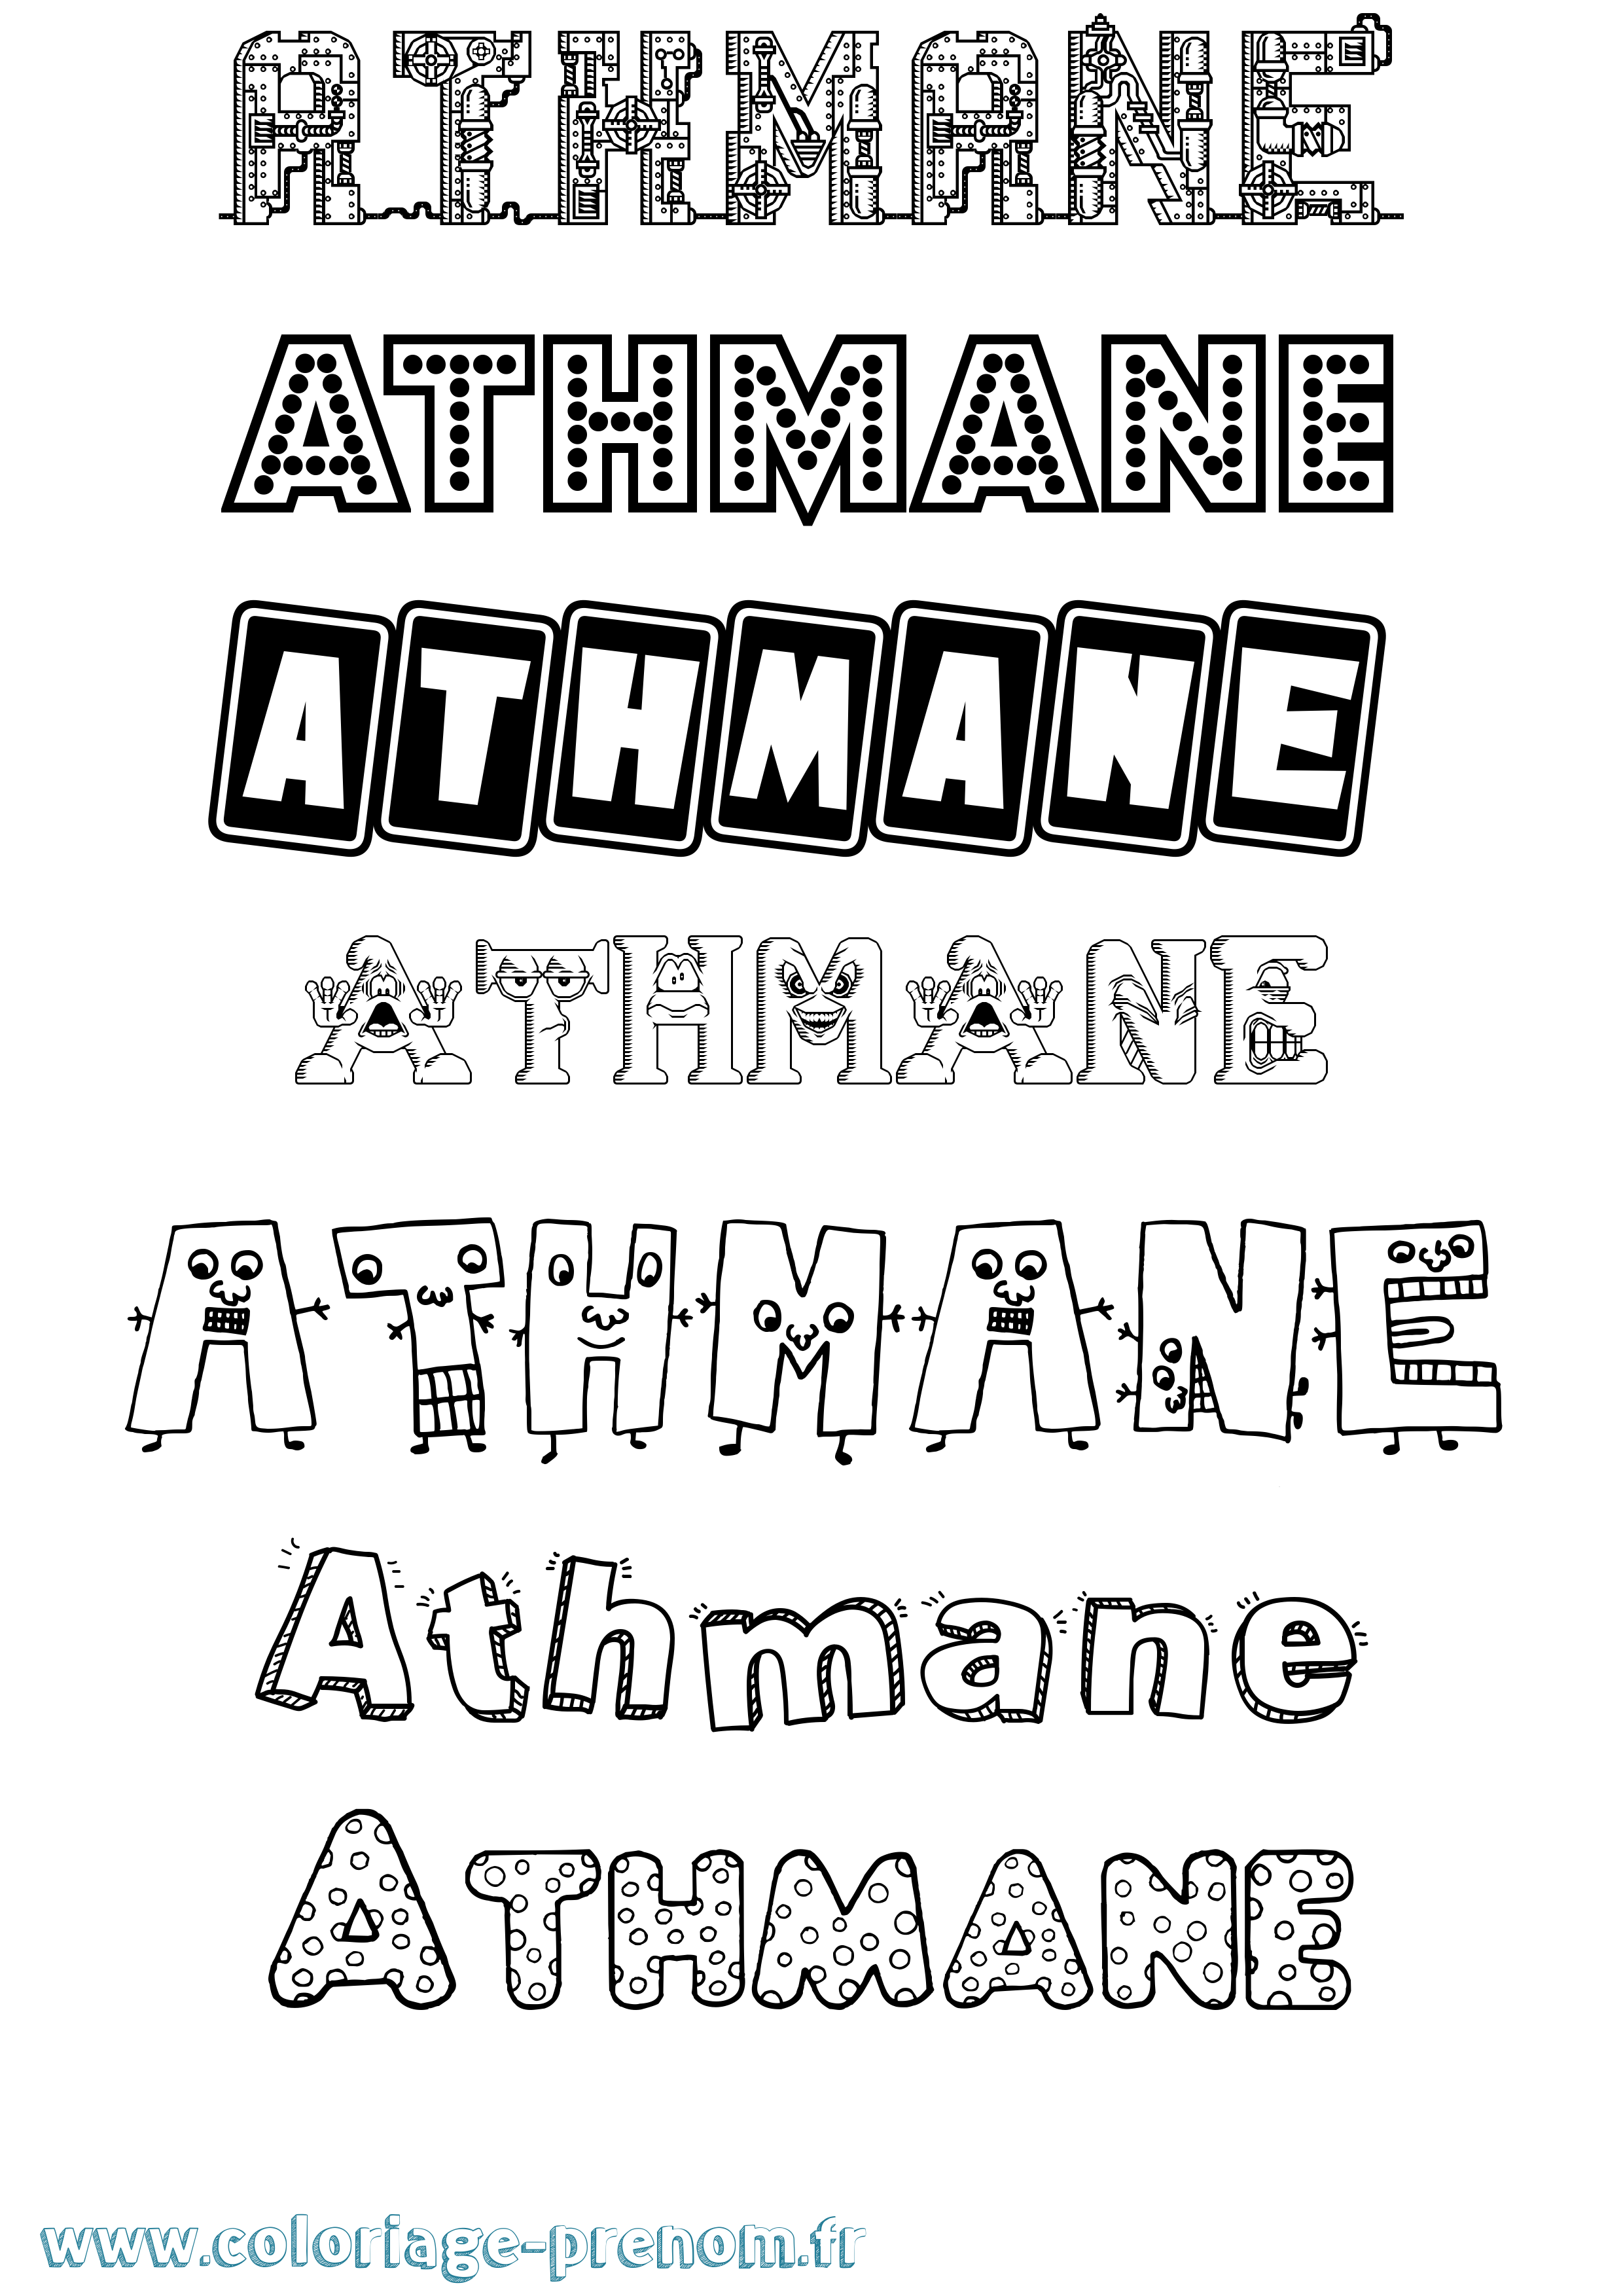 Coloriage prénom Athmane Fun